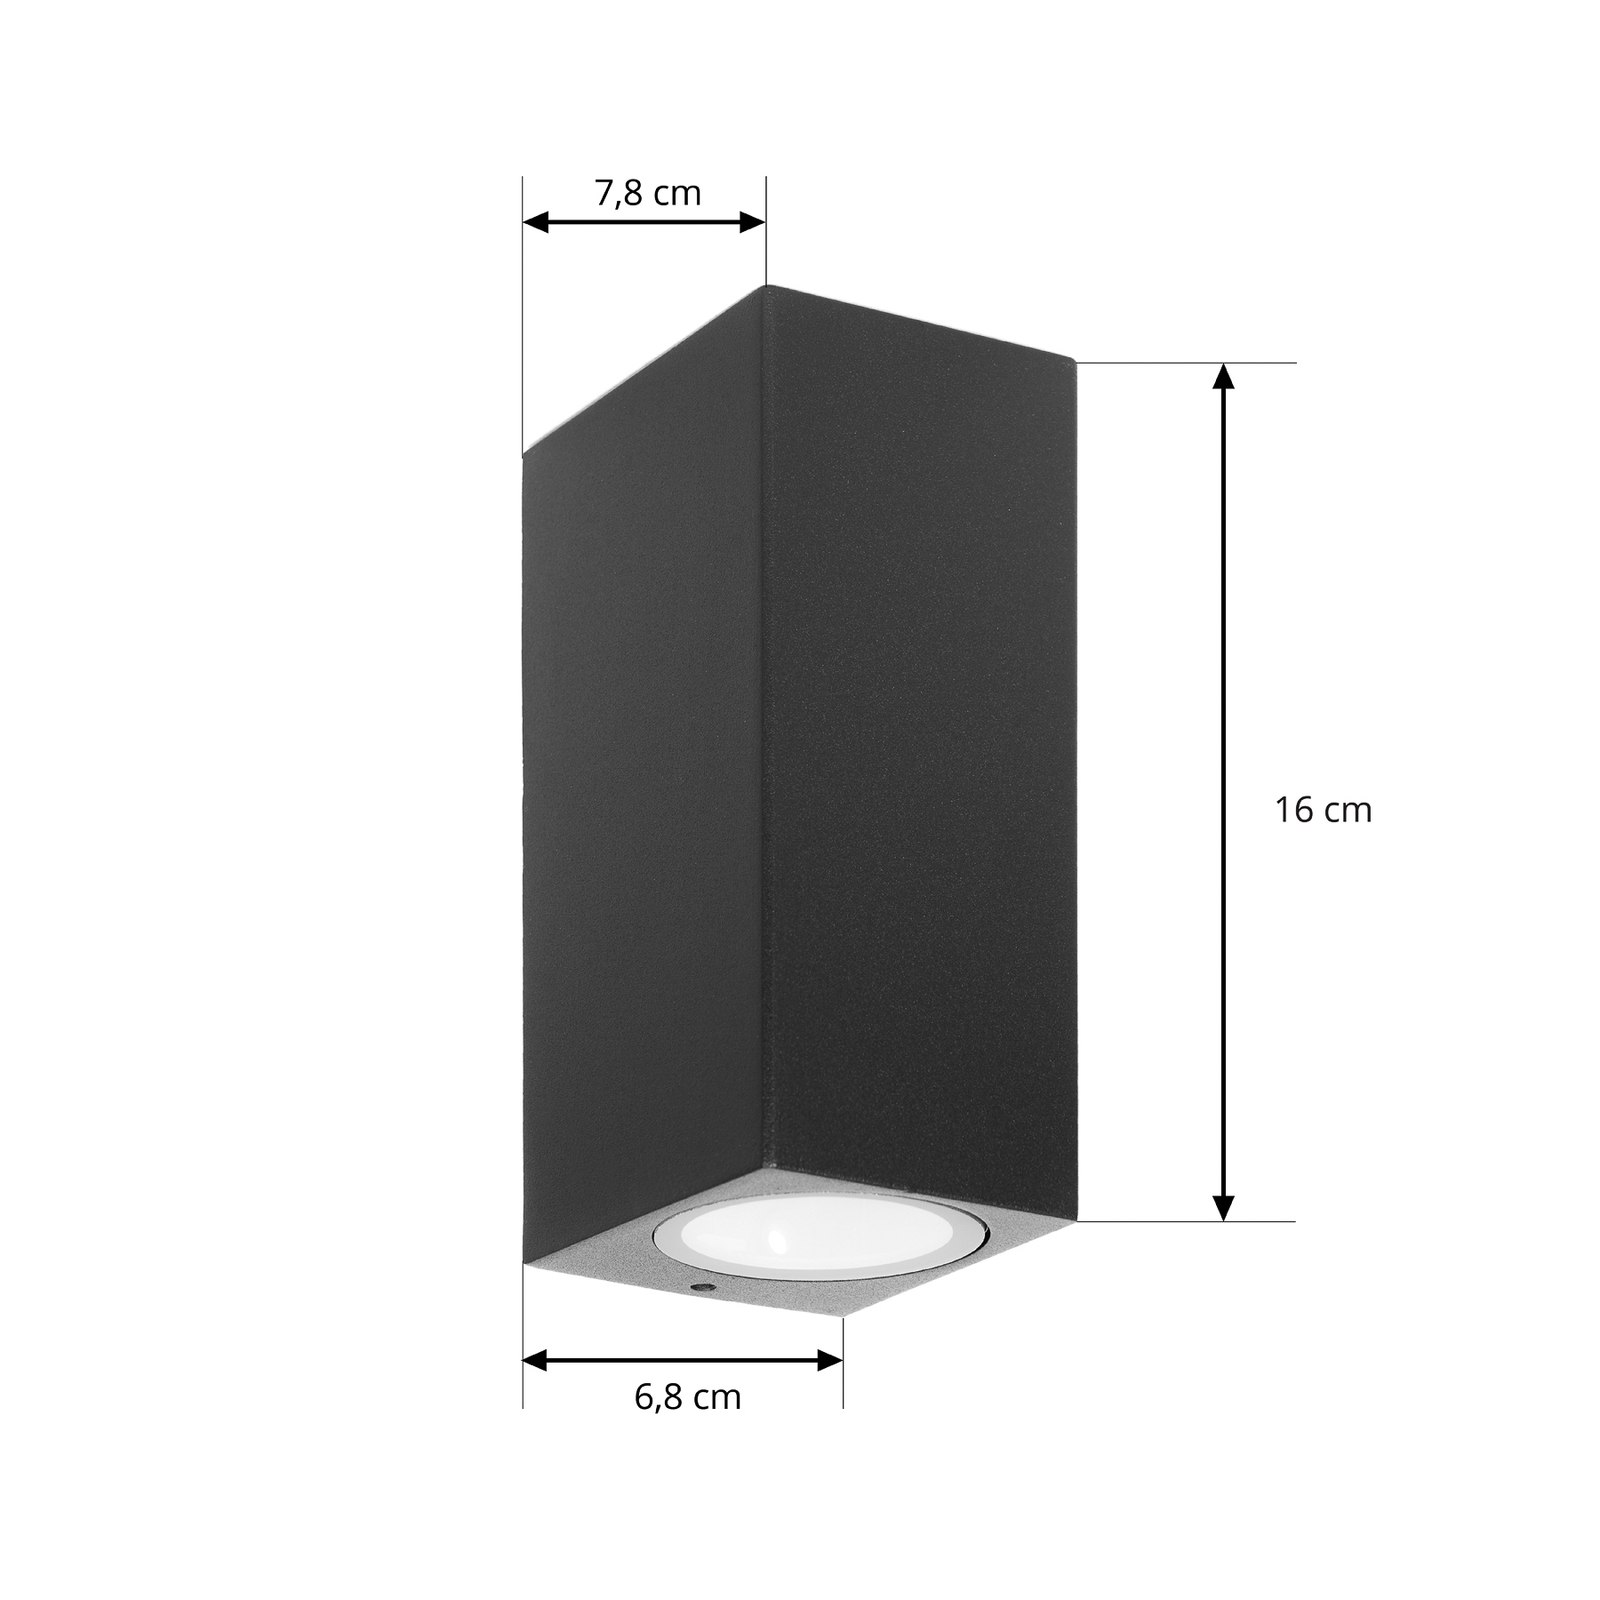 Prios zunanja stenska svetilka Tetje, črna, kotna, 16 cm, komplet 4 kosov